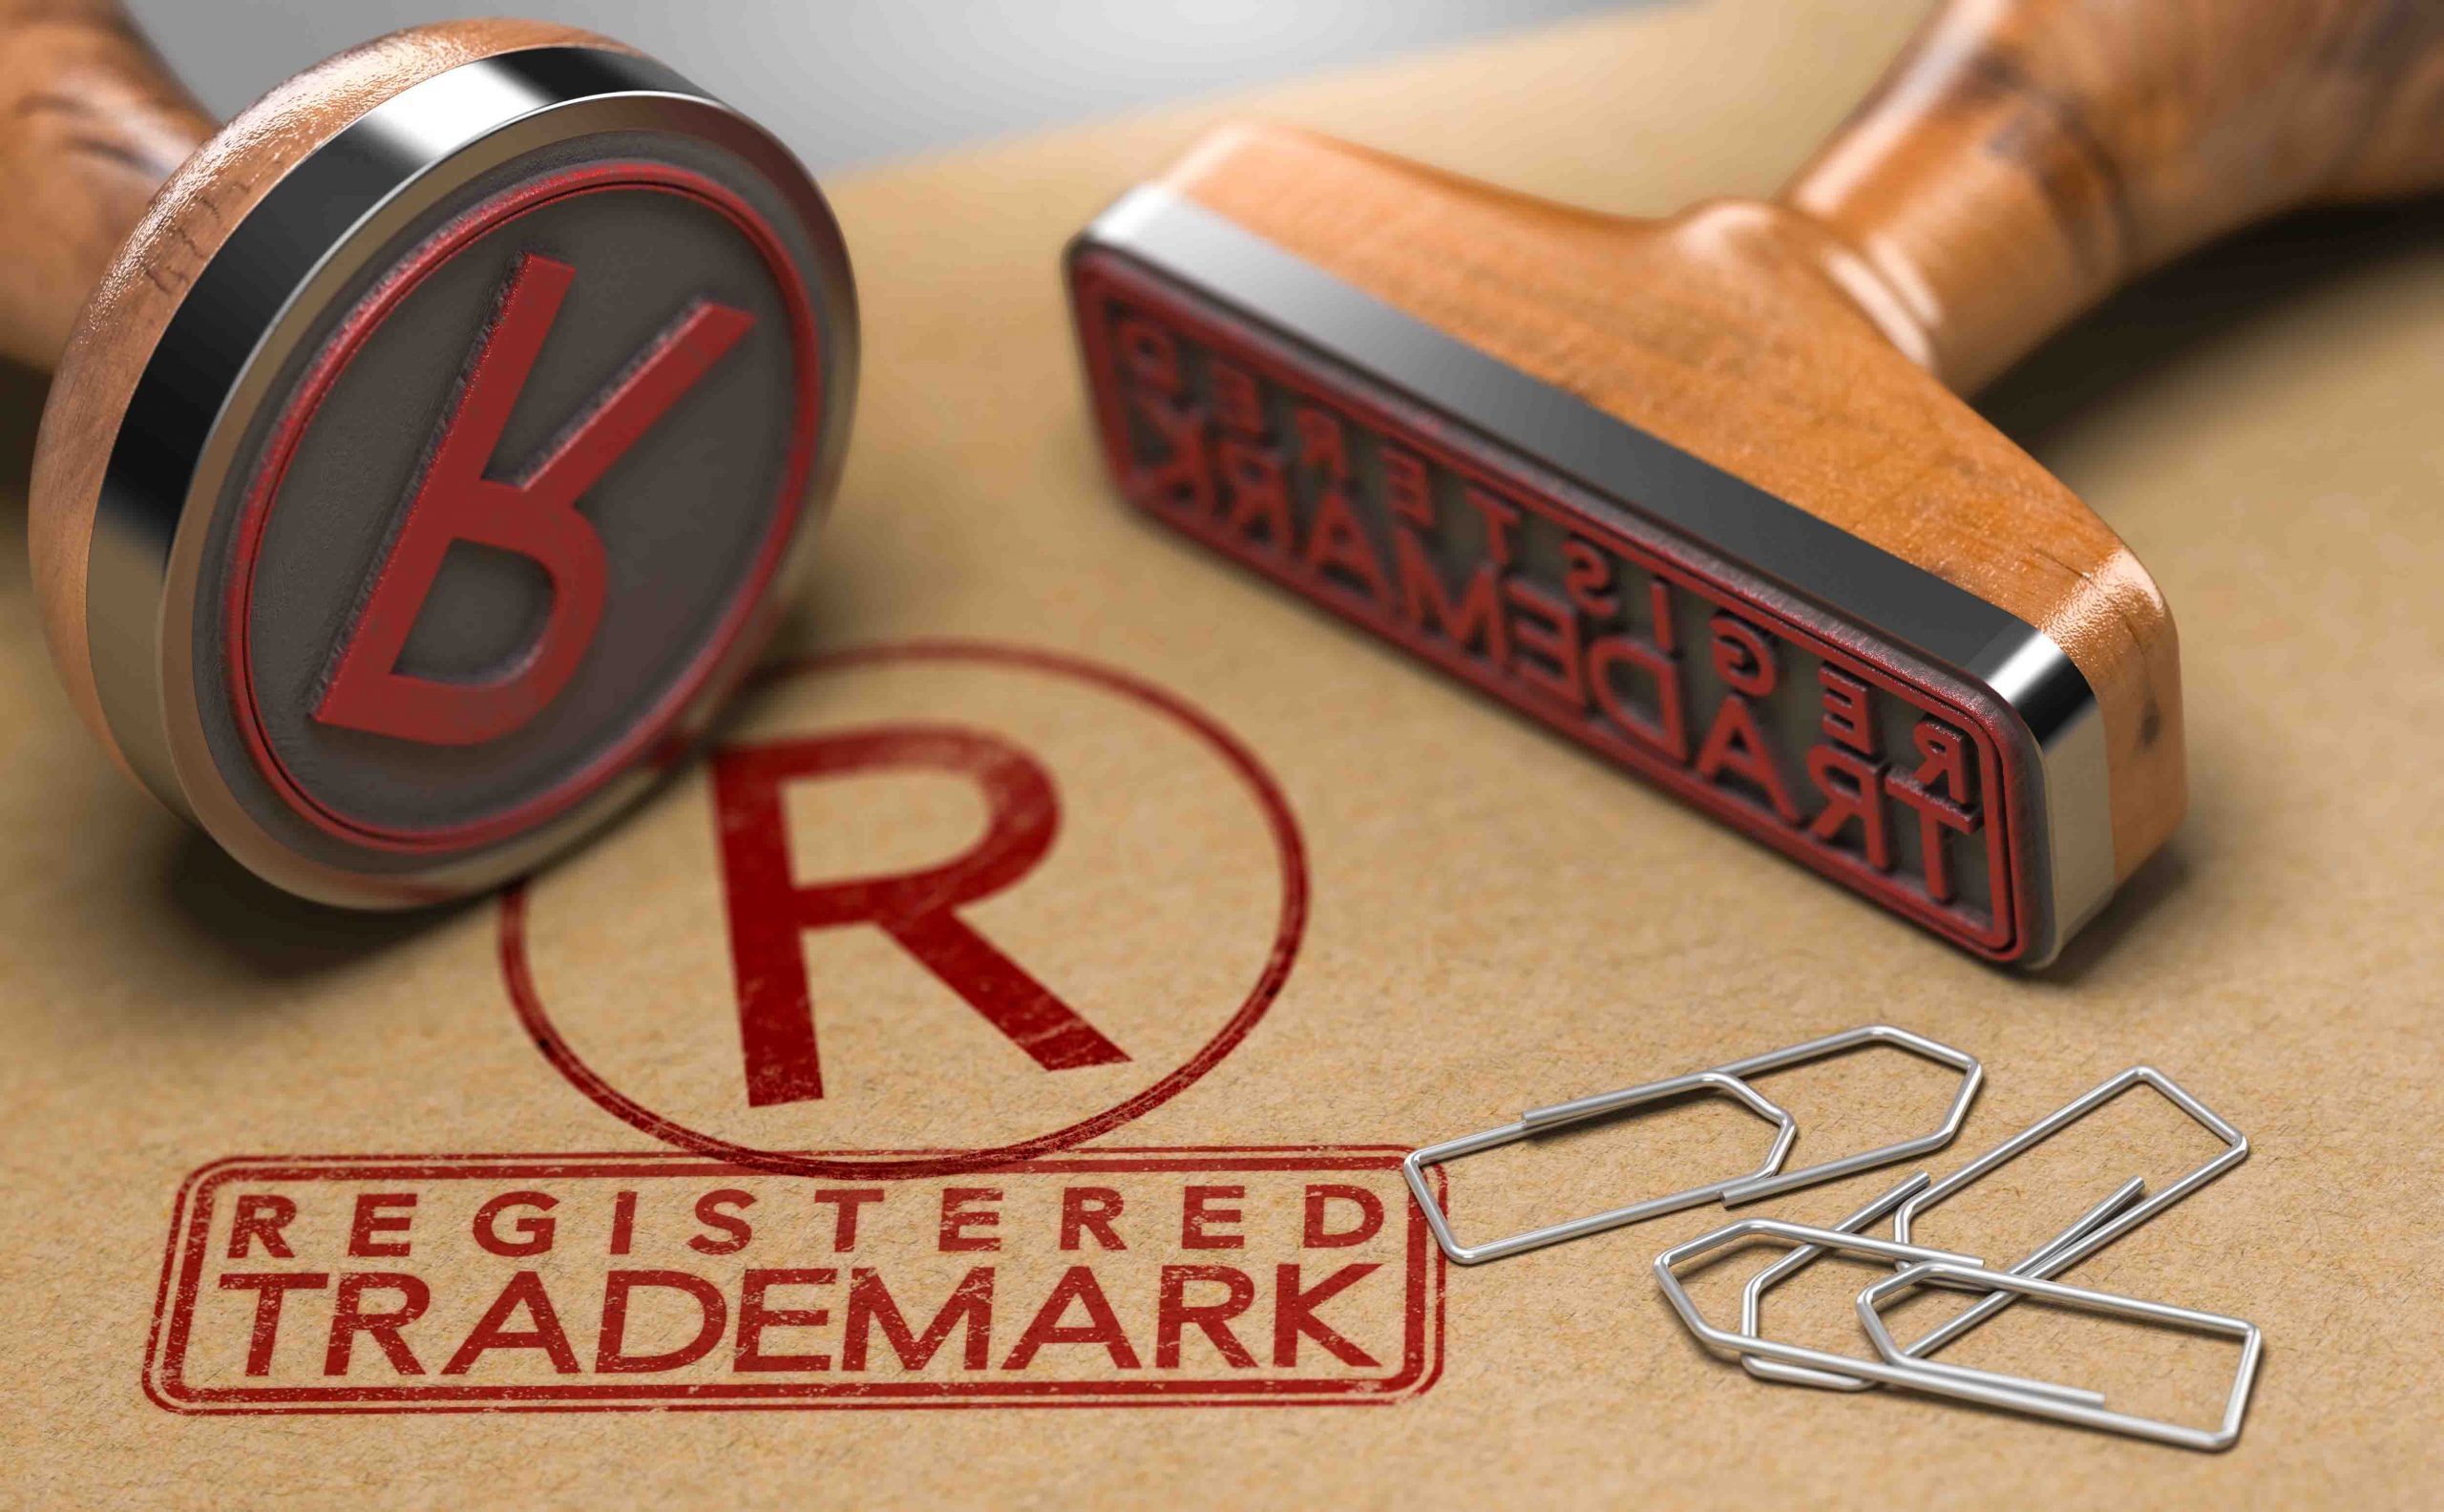 HK Trademark Registration